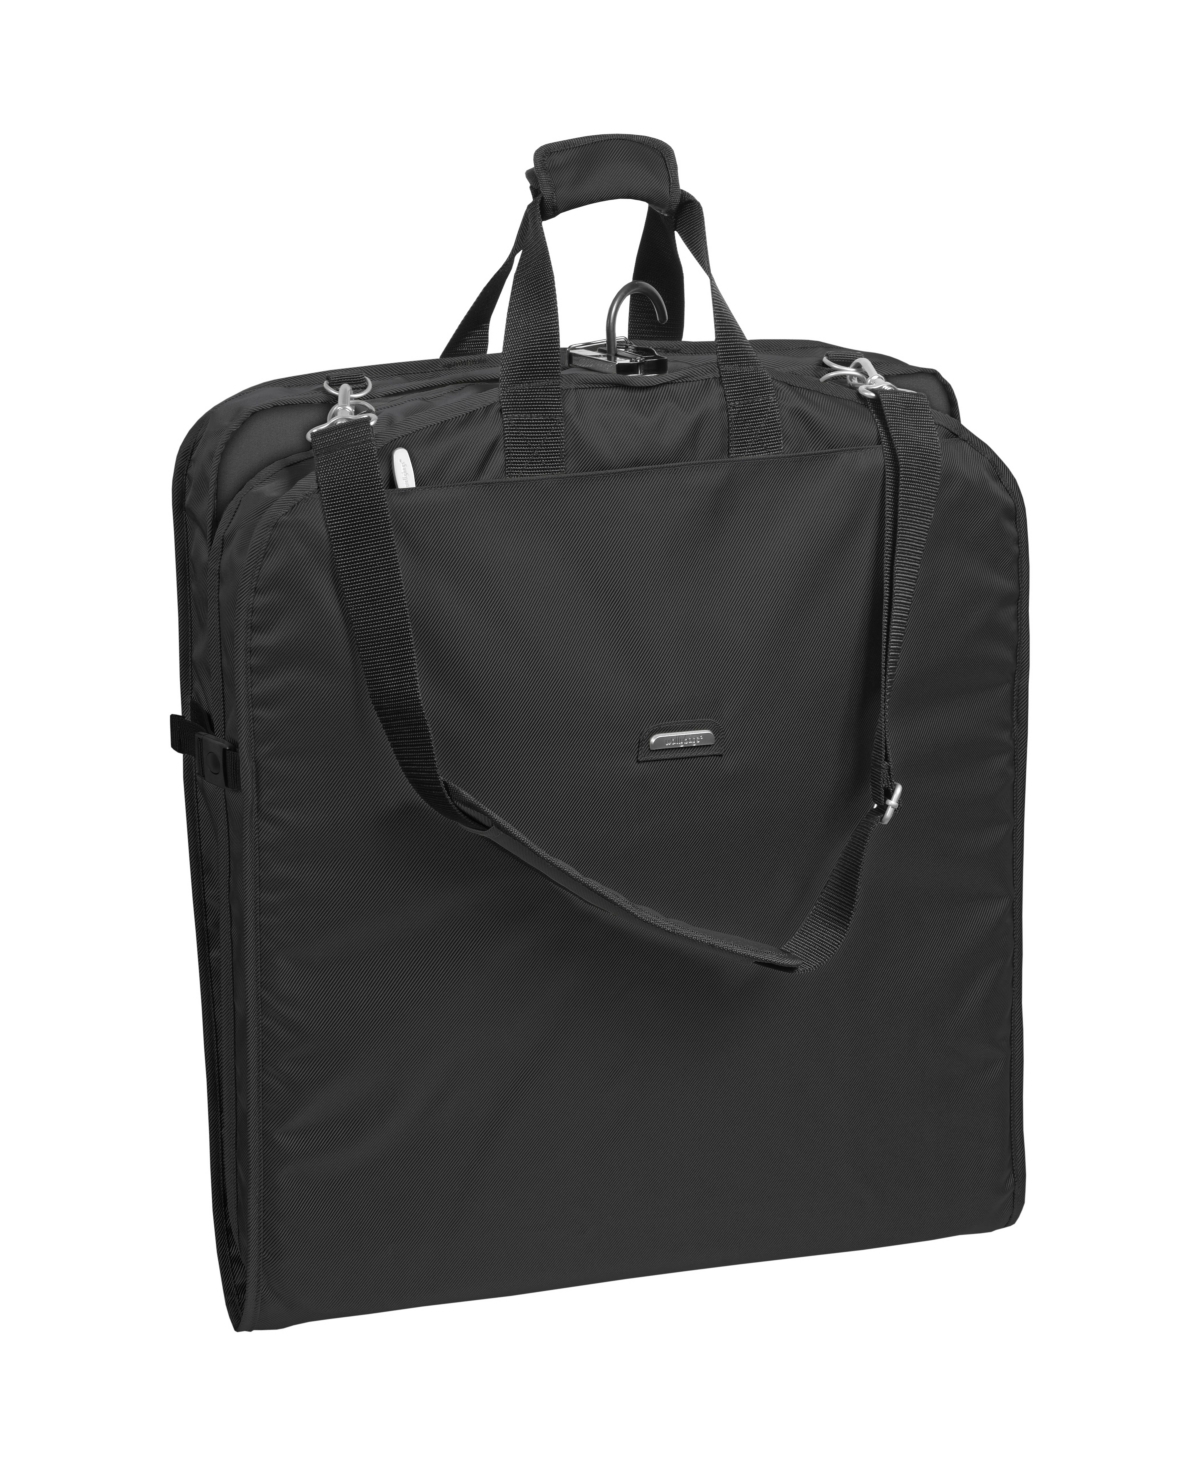 42" Premium Travel Garment Bag with Shoulder Strap and Pockets - Black